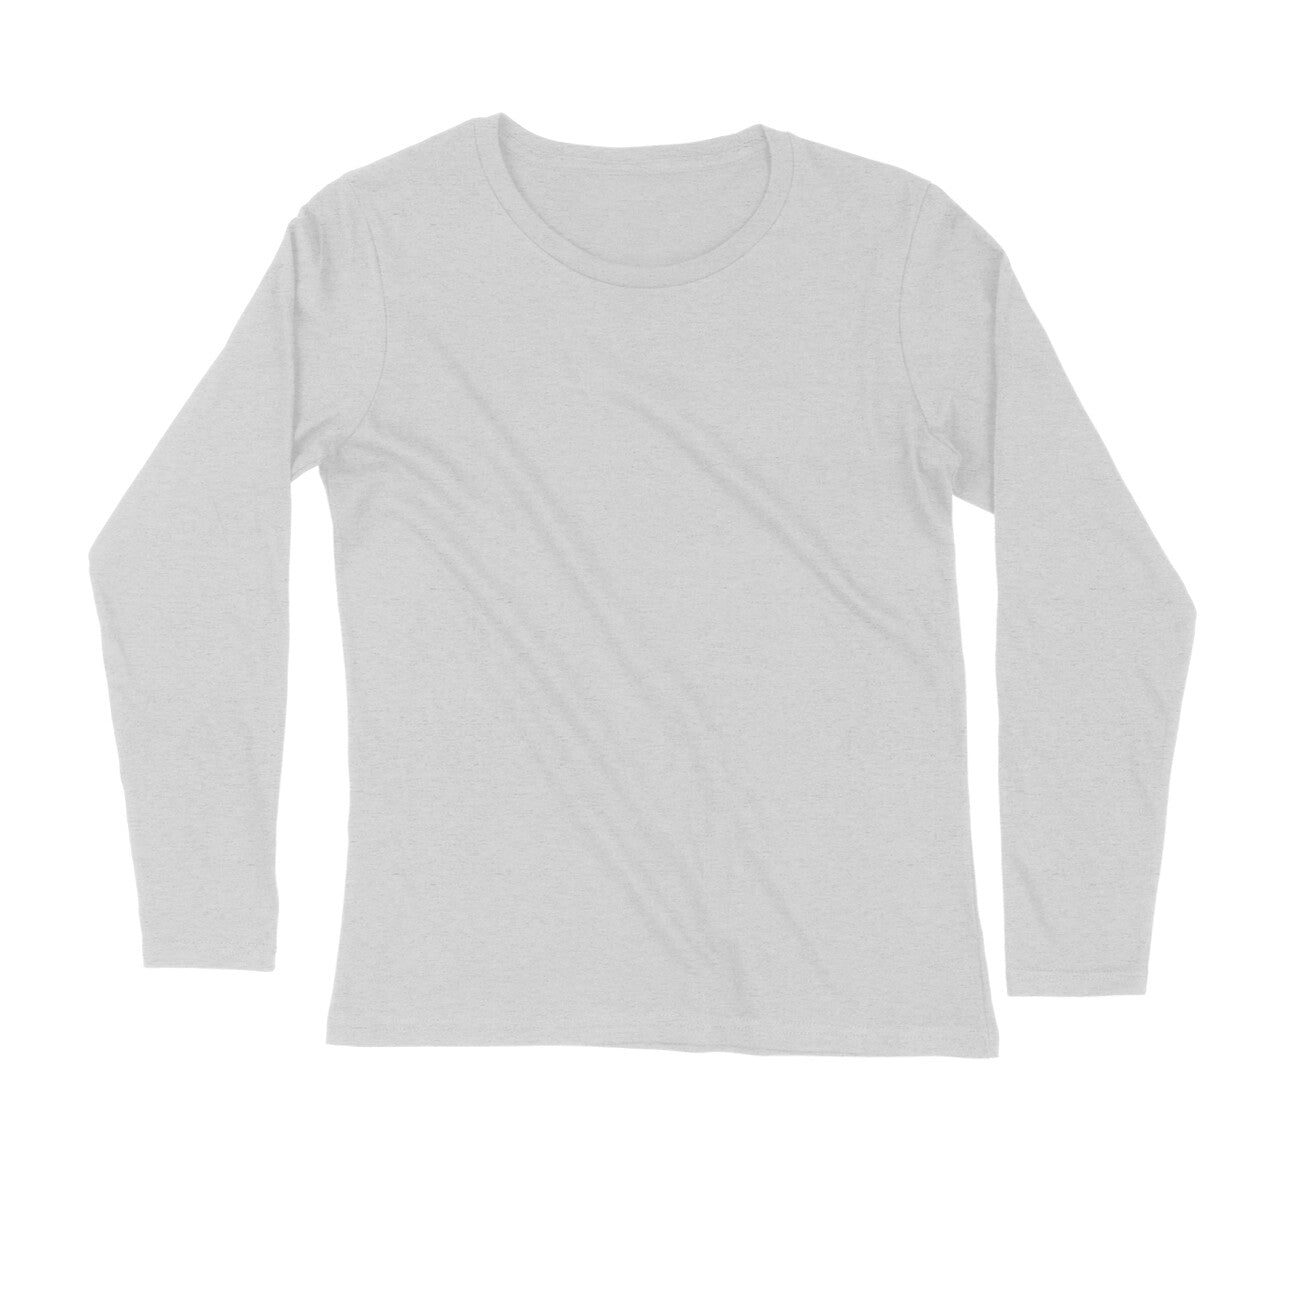 Melange Grey - Full Sleeve Round Neck T-Shirt